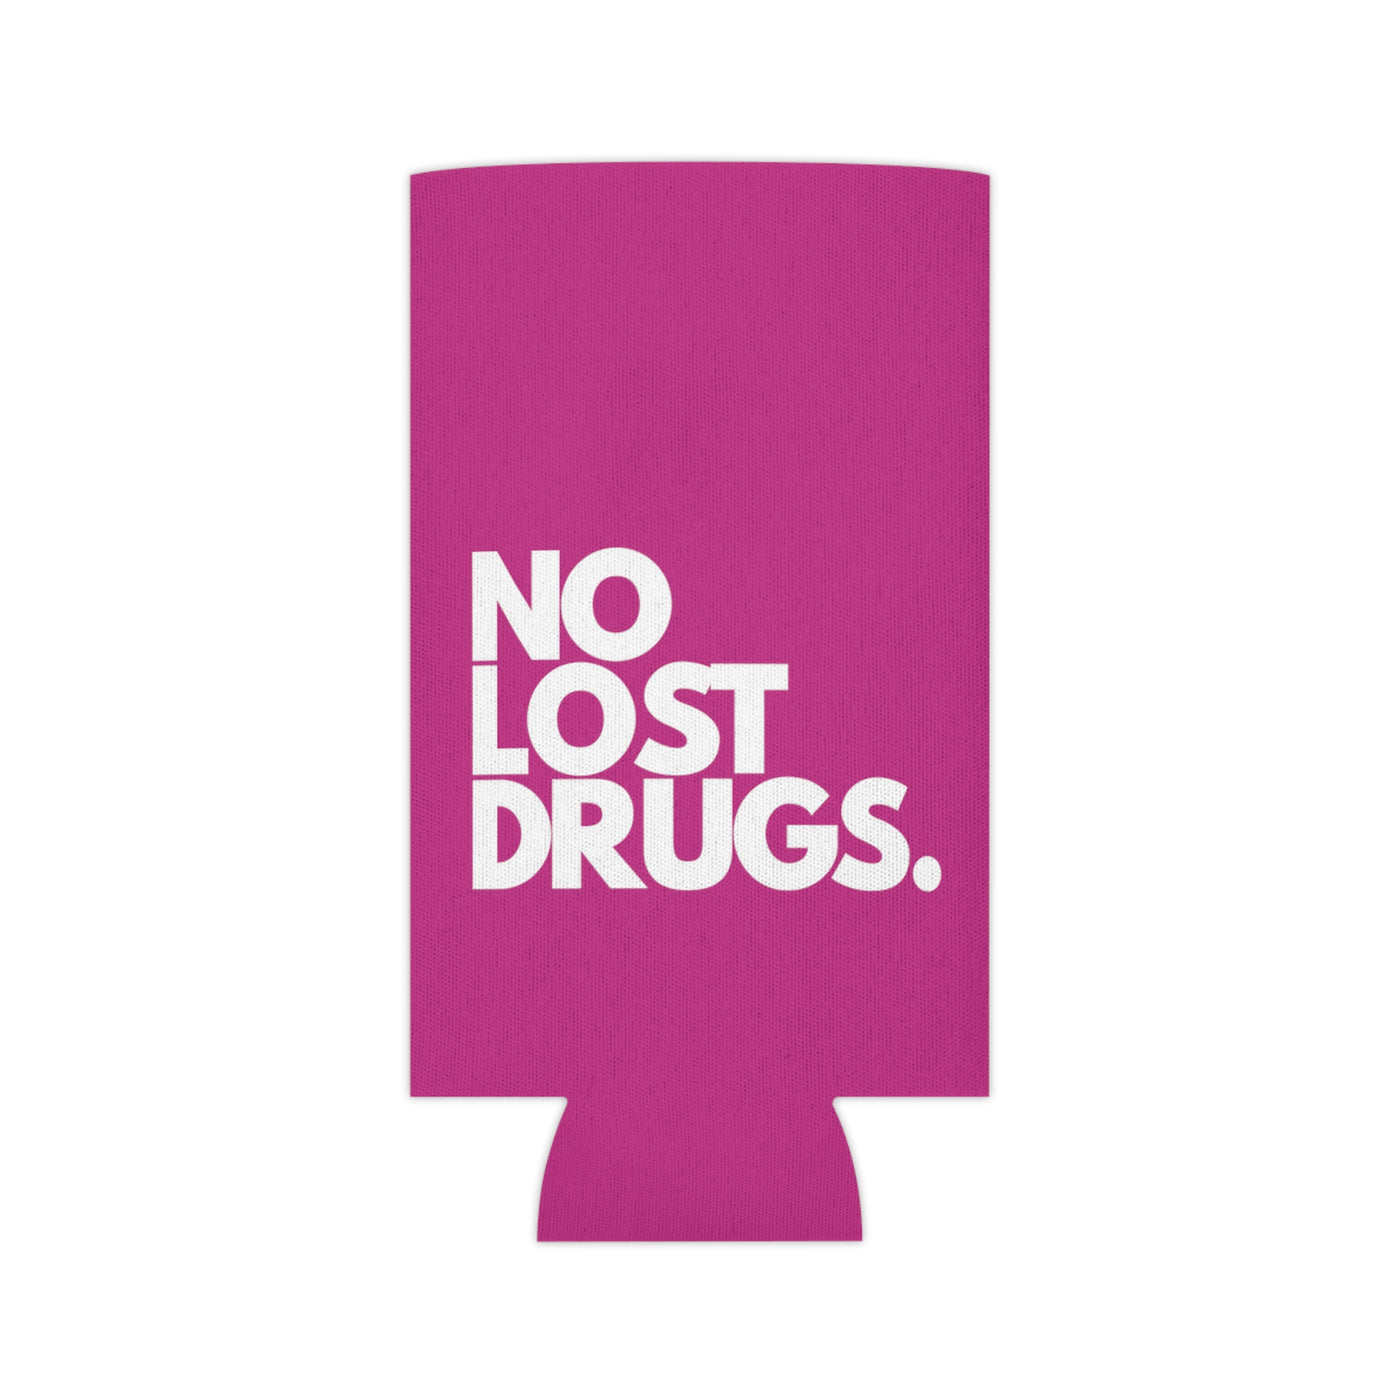 No Lost Drugs.